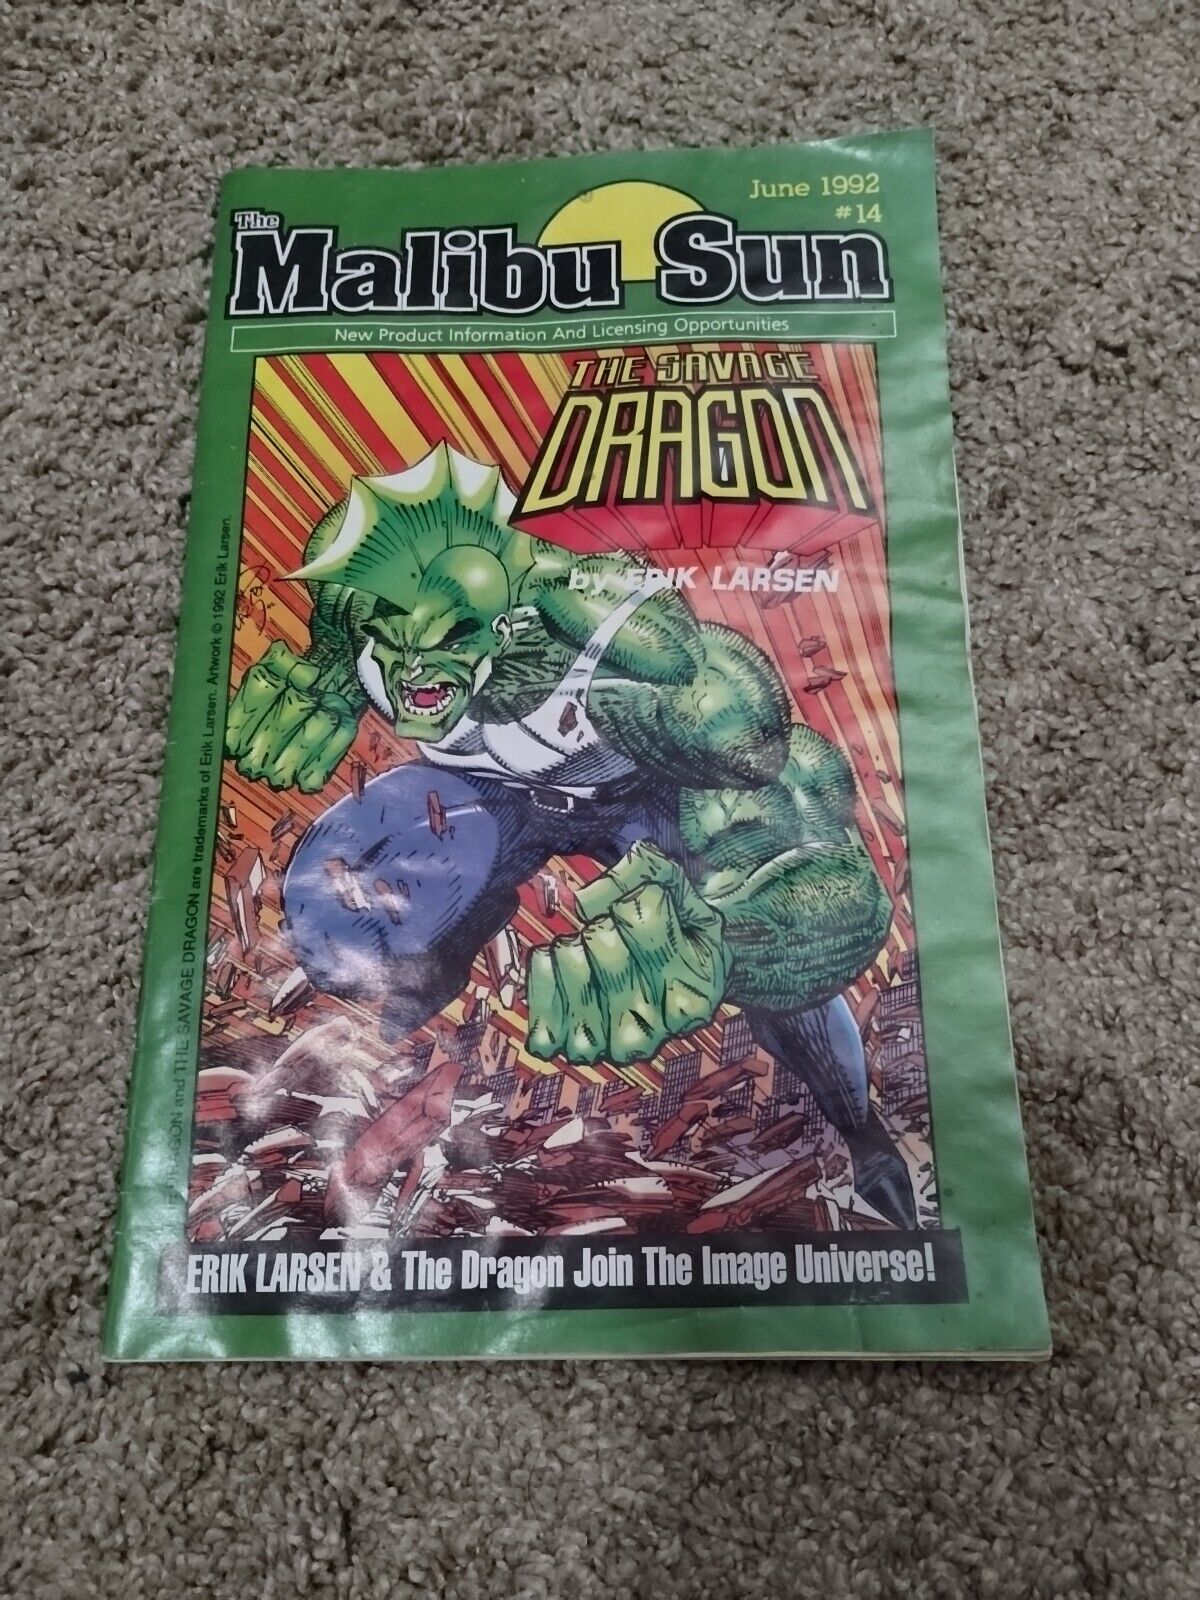 The Malibu Sun June 1992 #14 The Savage Dragon